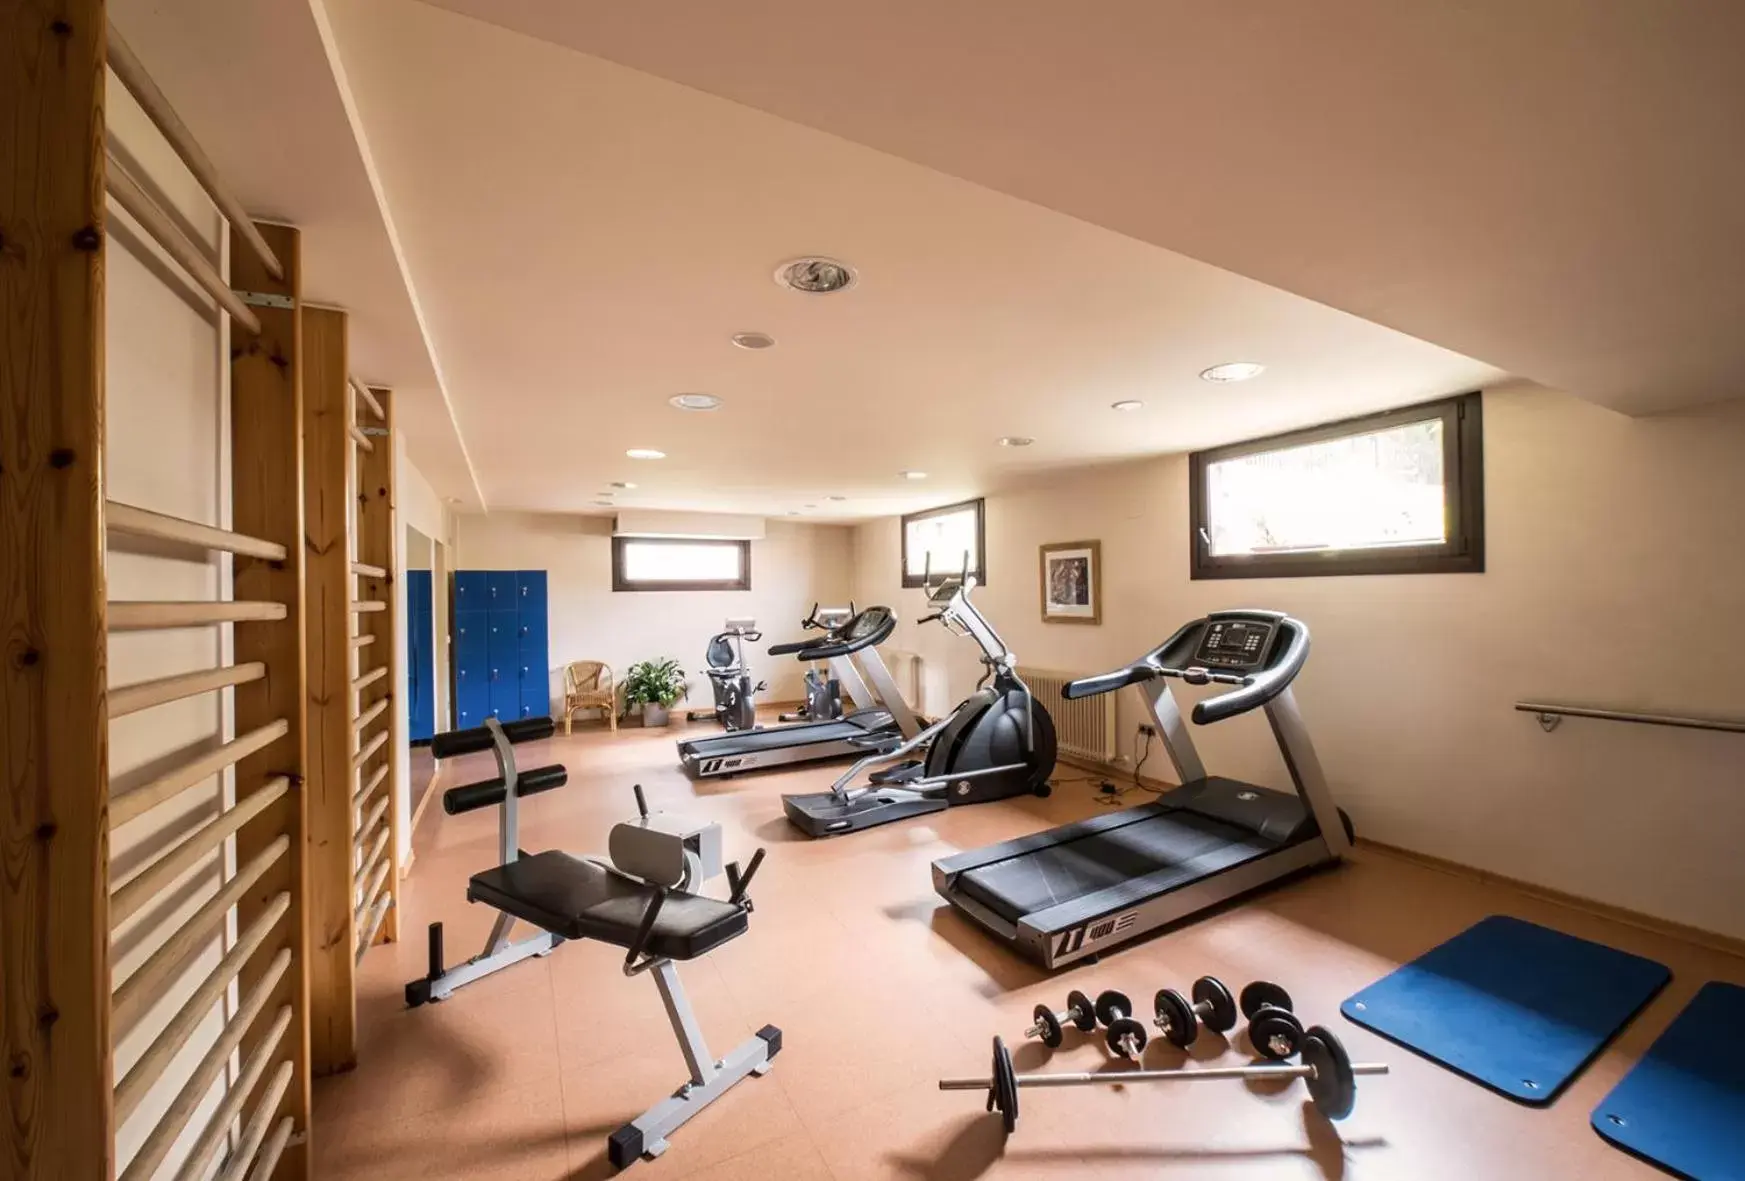 Fitness centre/facilities, Fitness Center/Facilities in Hotel Villa Virginia